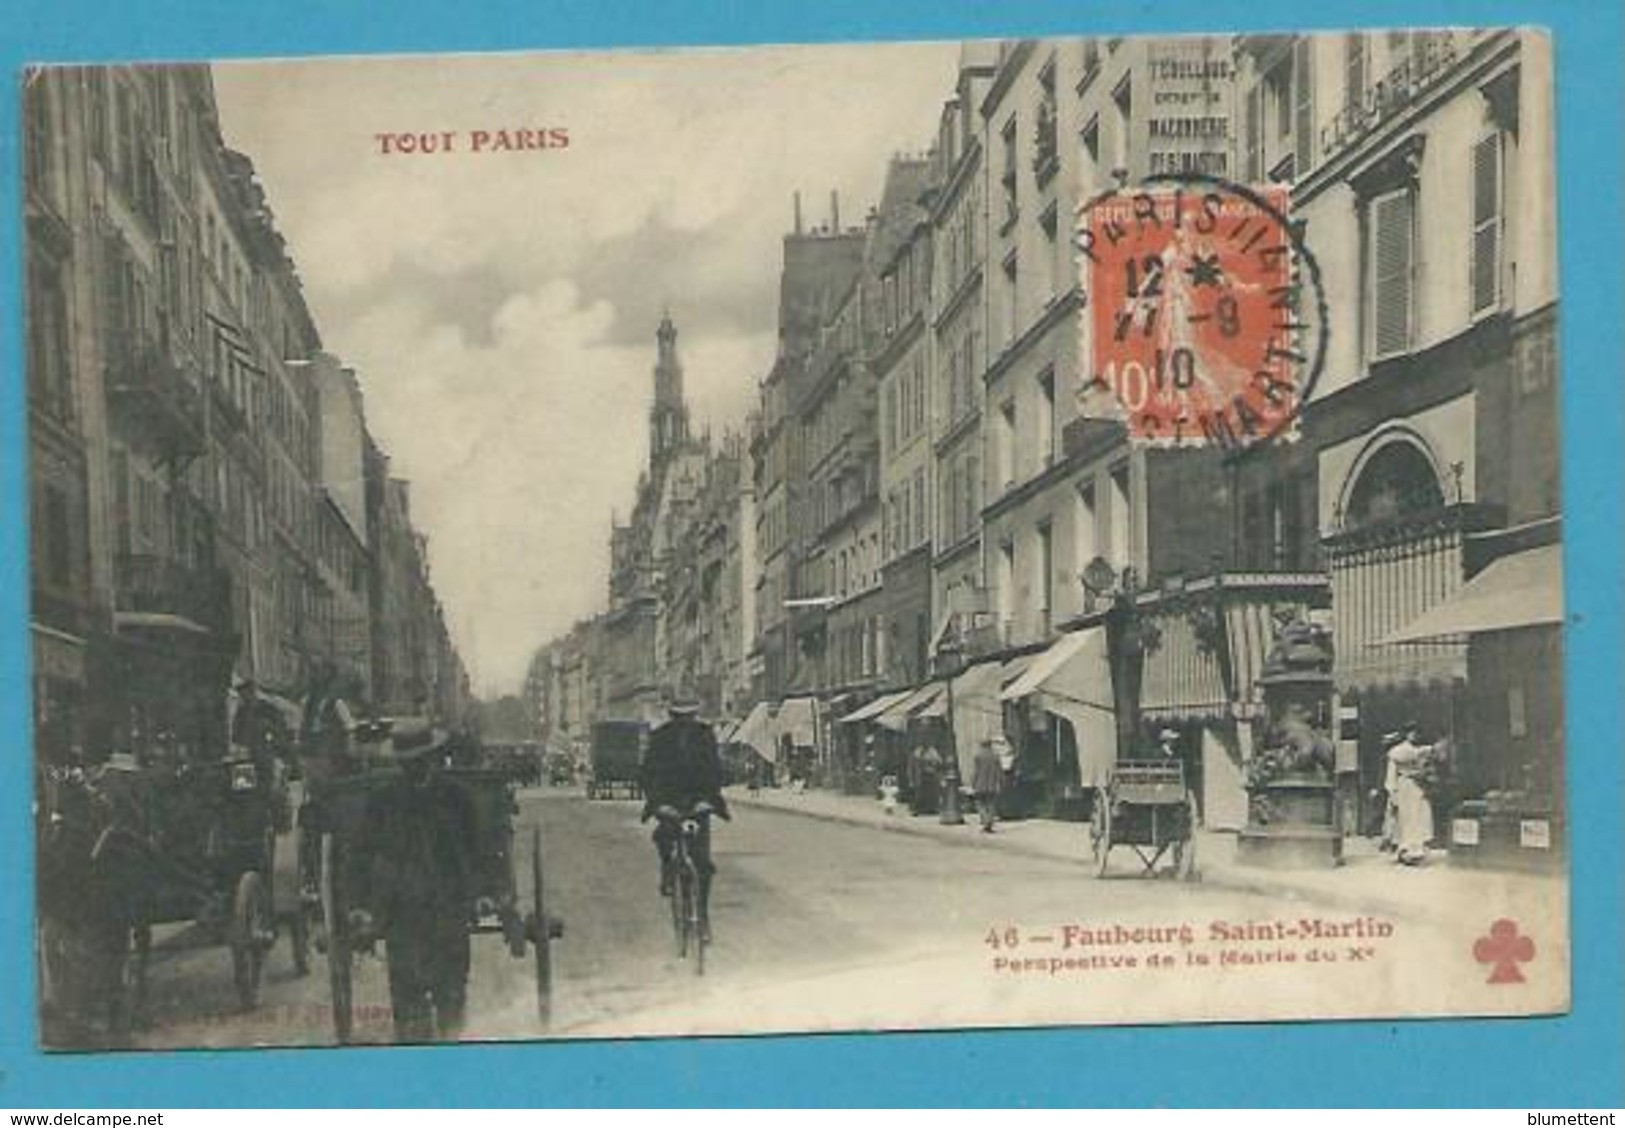 CPA TOUT PARIS 46 - Faubourg Saint-Martin Perspective De La Mairie Du Xème (Xème) Edition FLEURY - District 10